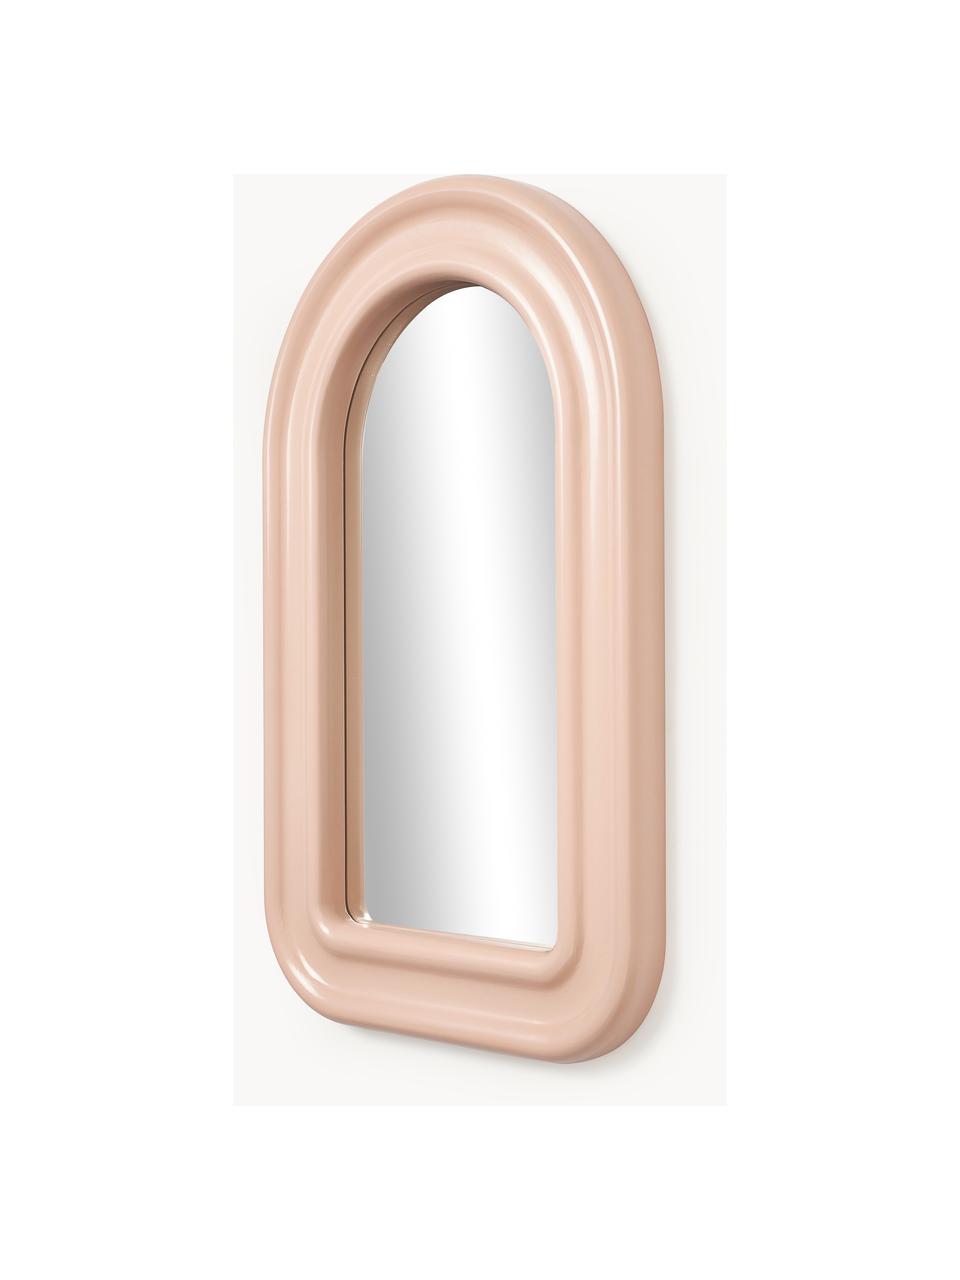 Wandspiegel Selim, Spiegelfläche: Spiegelglas, Apricot, B 50 x H 80 cm